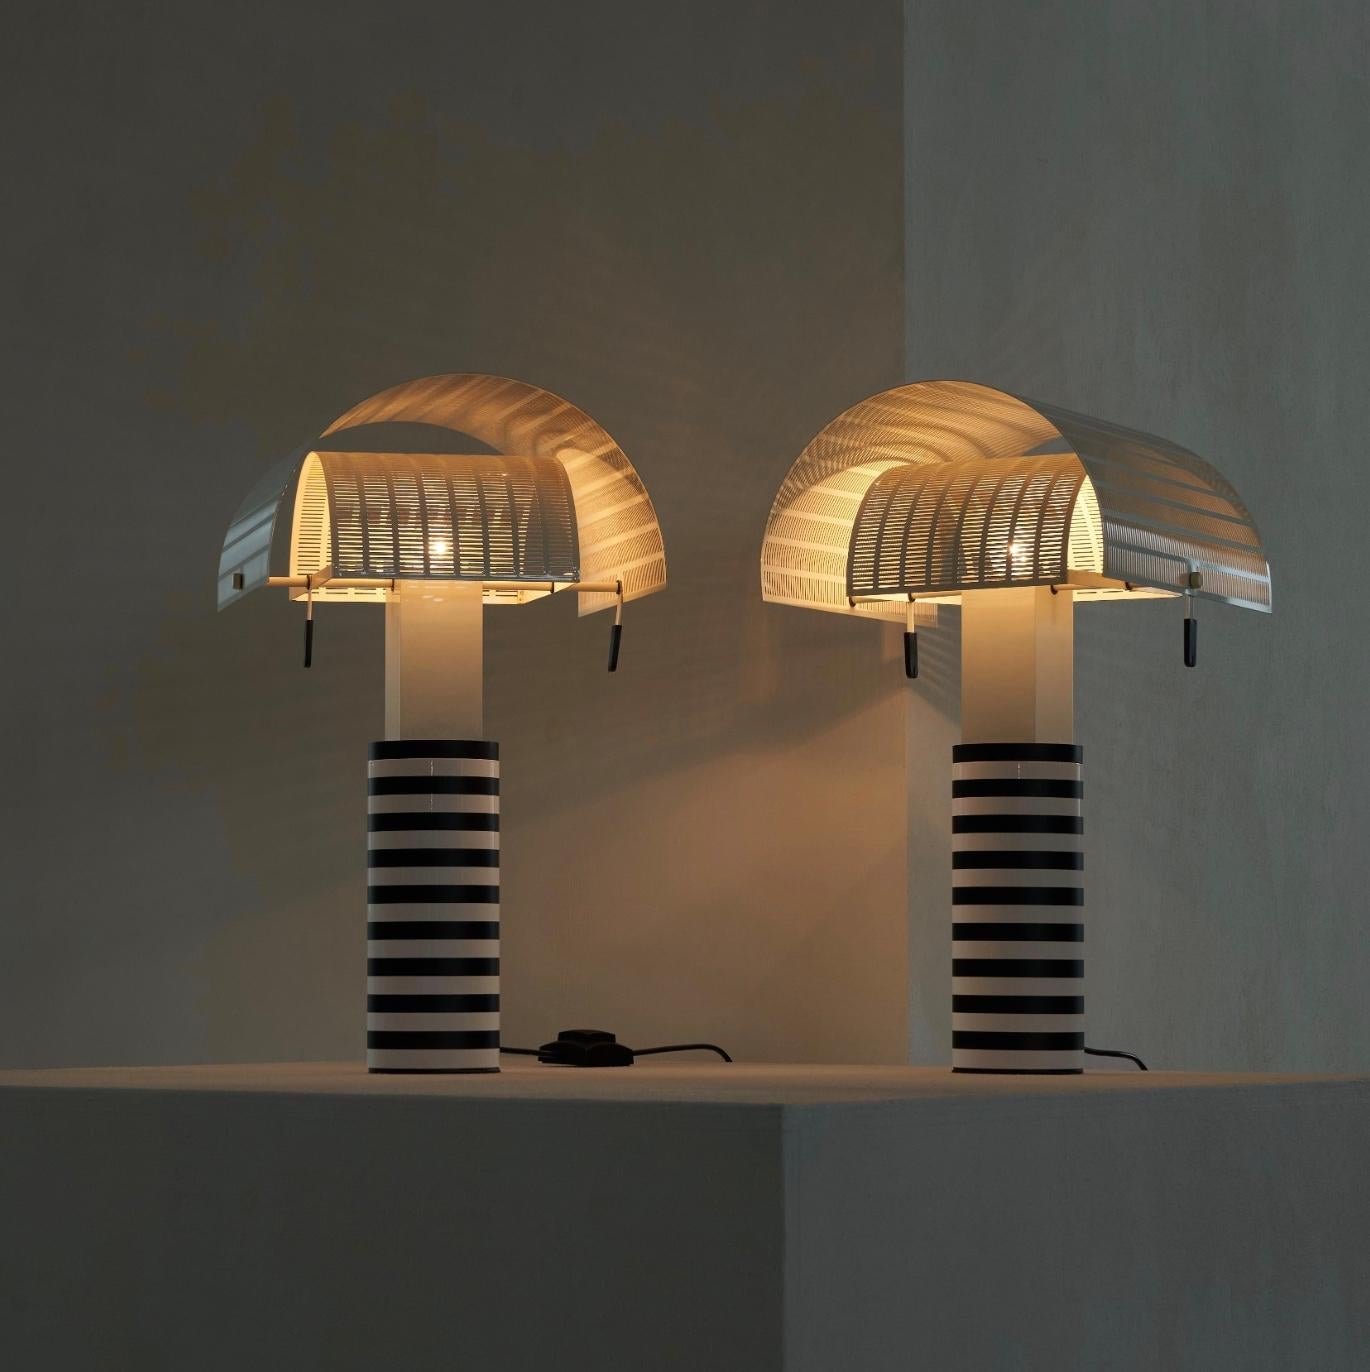 Exceptionnelle paire de lampes de table 'Shogun' de l'architecte et designer Mario Botta (1943) pour Artemide 1986.

Ces lampes de table proviennent directement des premiers propriétaires et ont toujours été ensemble. Achetées par les propriétaires